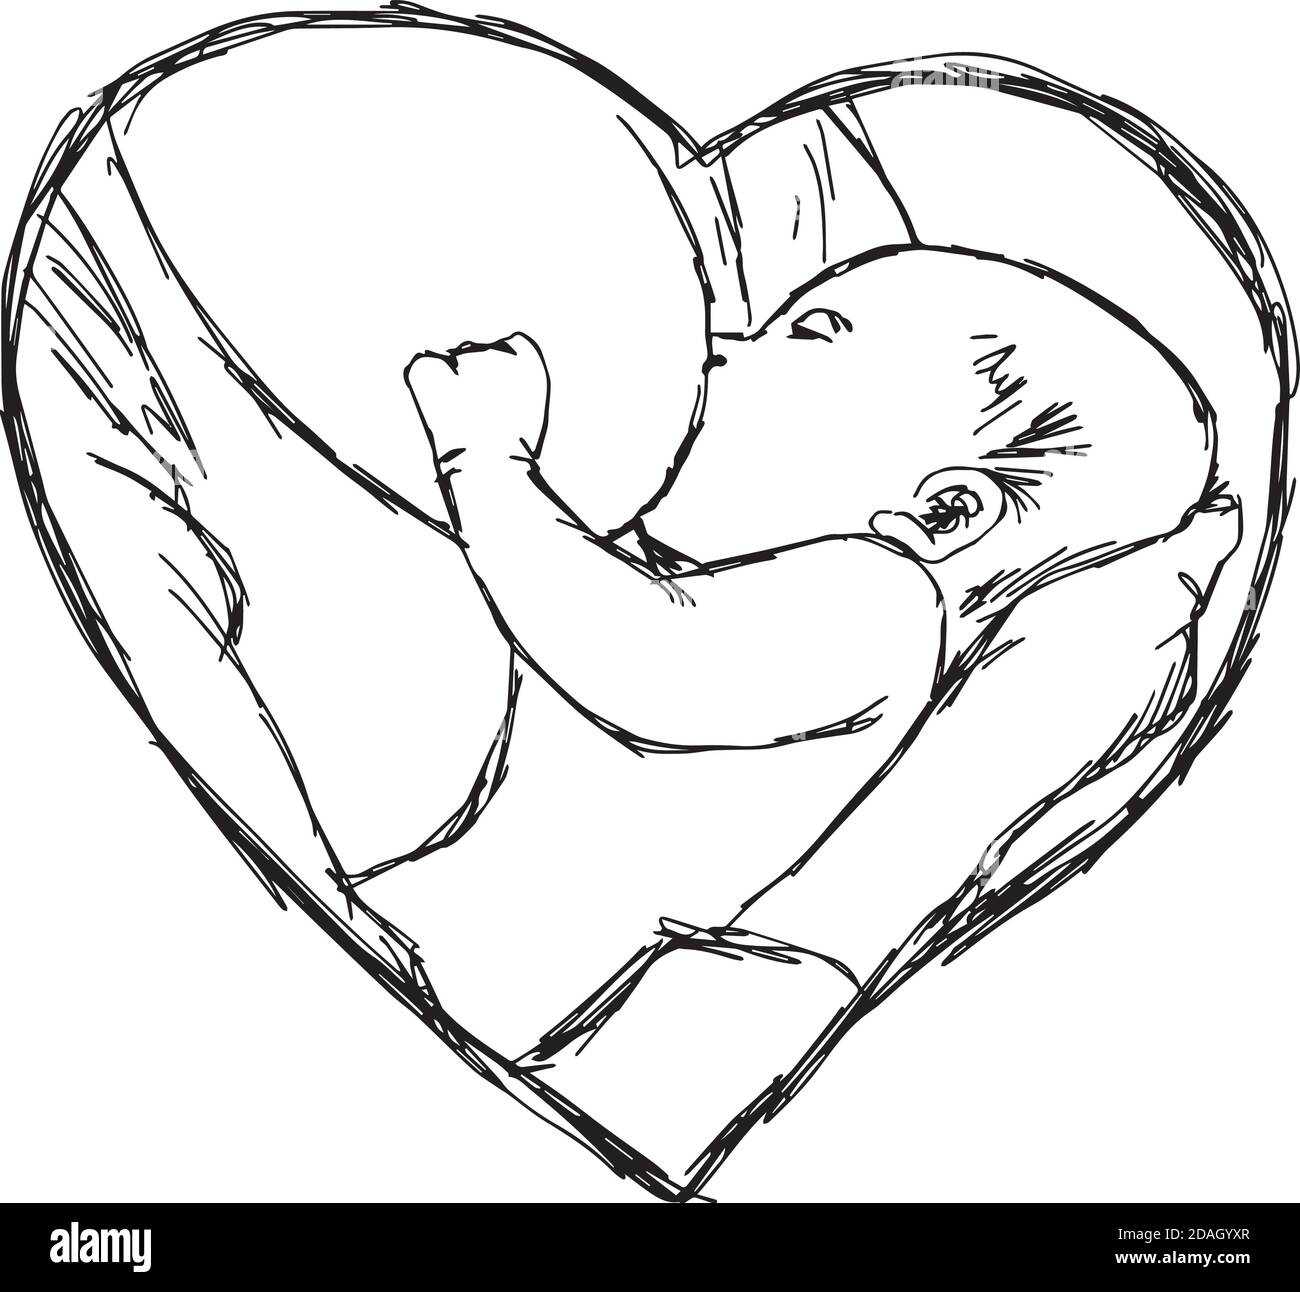 illustration vecteur doodle main tirée de l'esquisse bébé allaitant dans le cadre de forme de coeur, concept d'amour Illustration de Vecteur